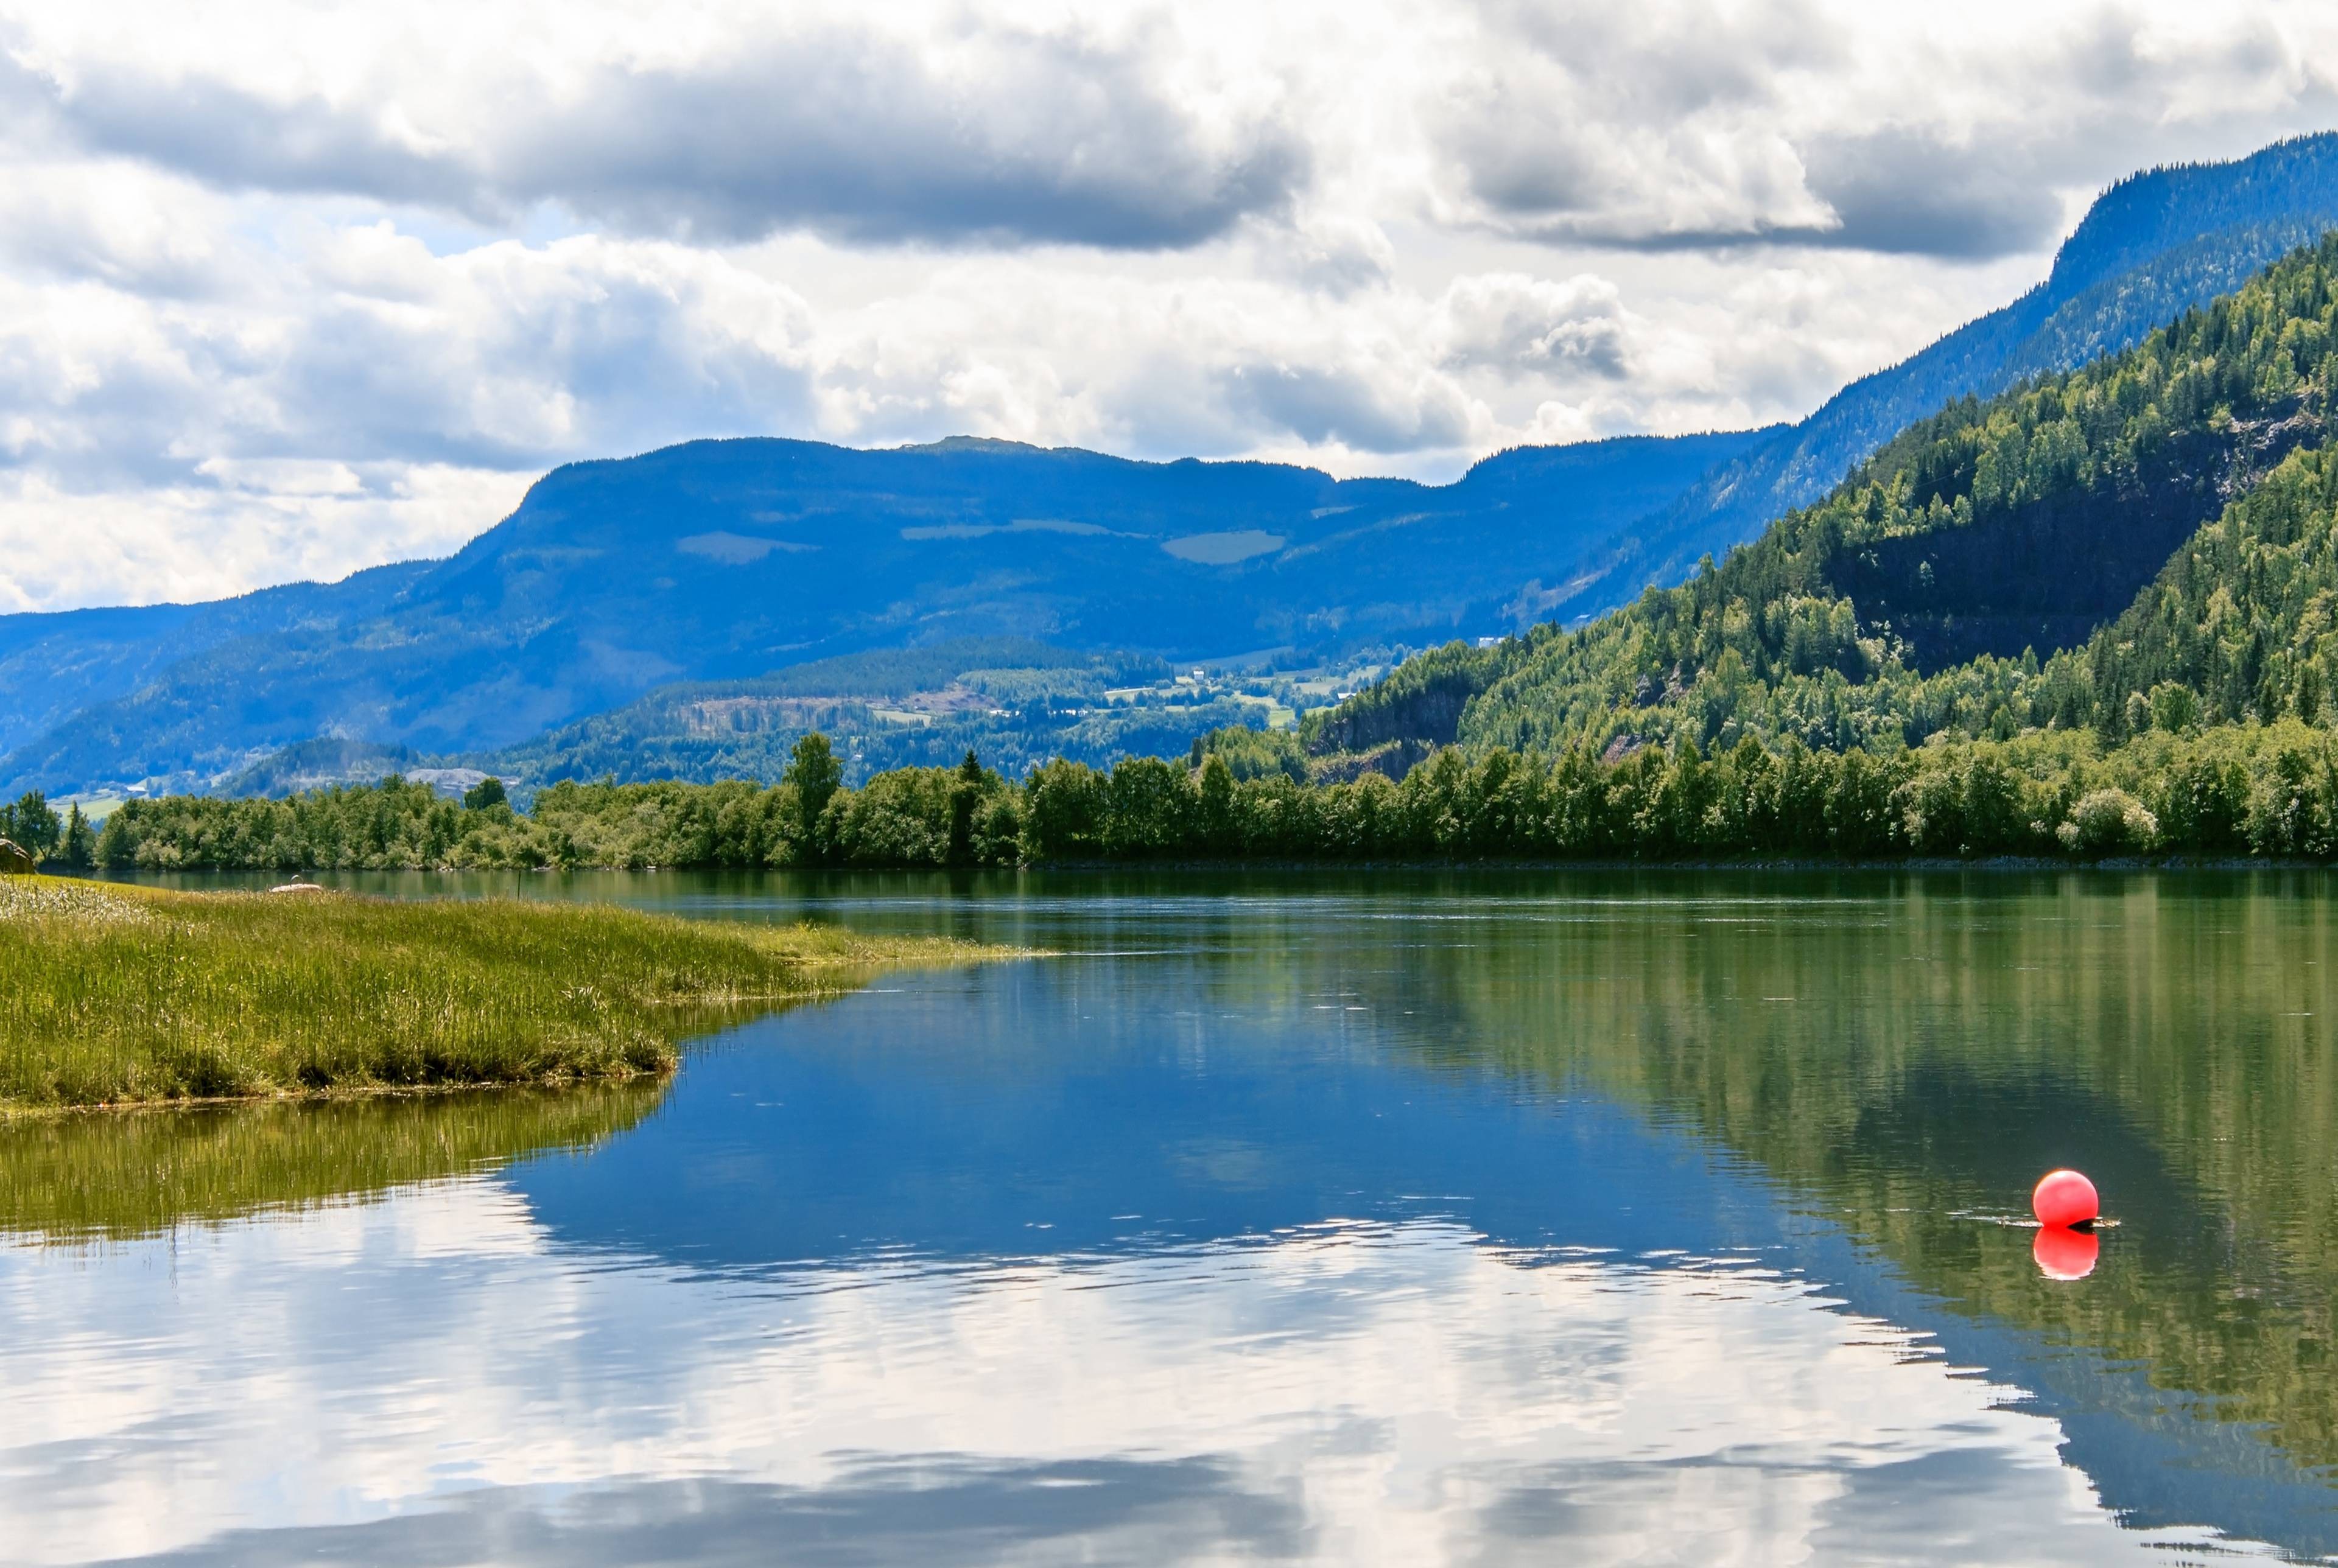 ⚡ Un road trip depuis Oslo à la découverte de la culture, de l'histoire et de la beauté naturelle norvégiennes.